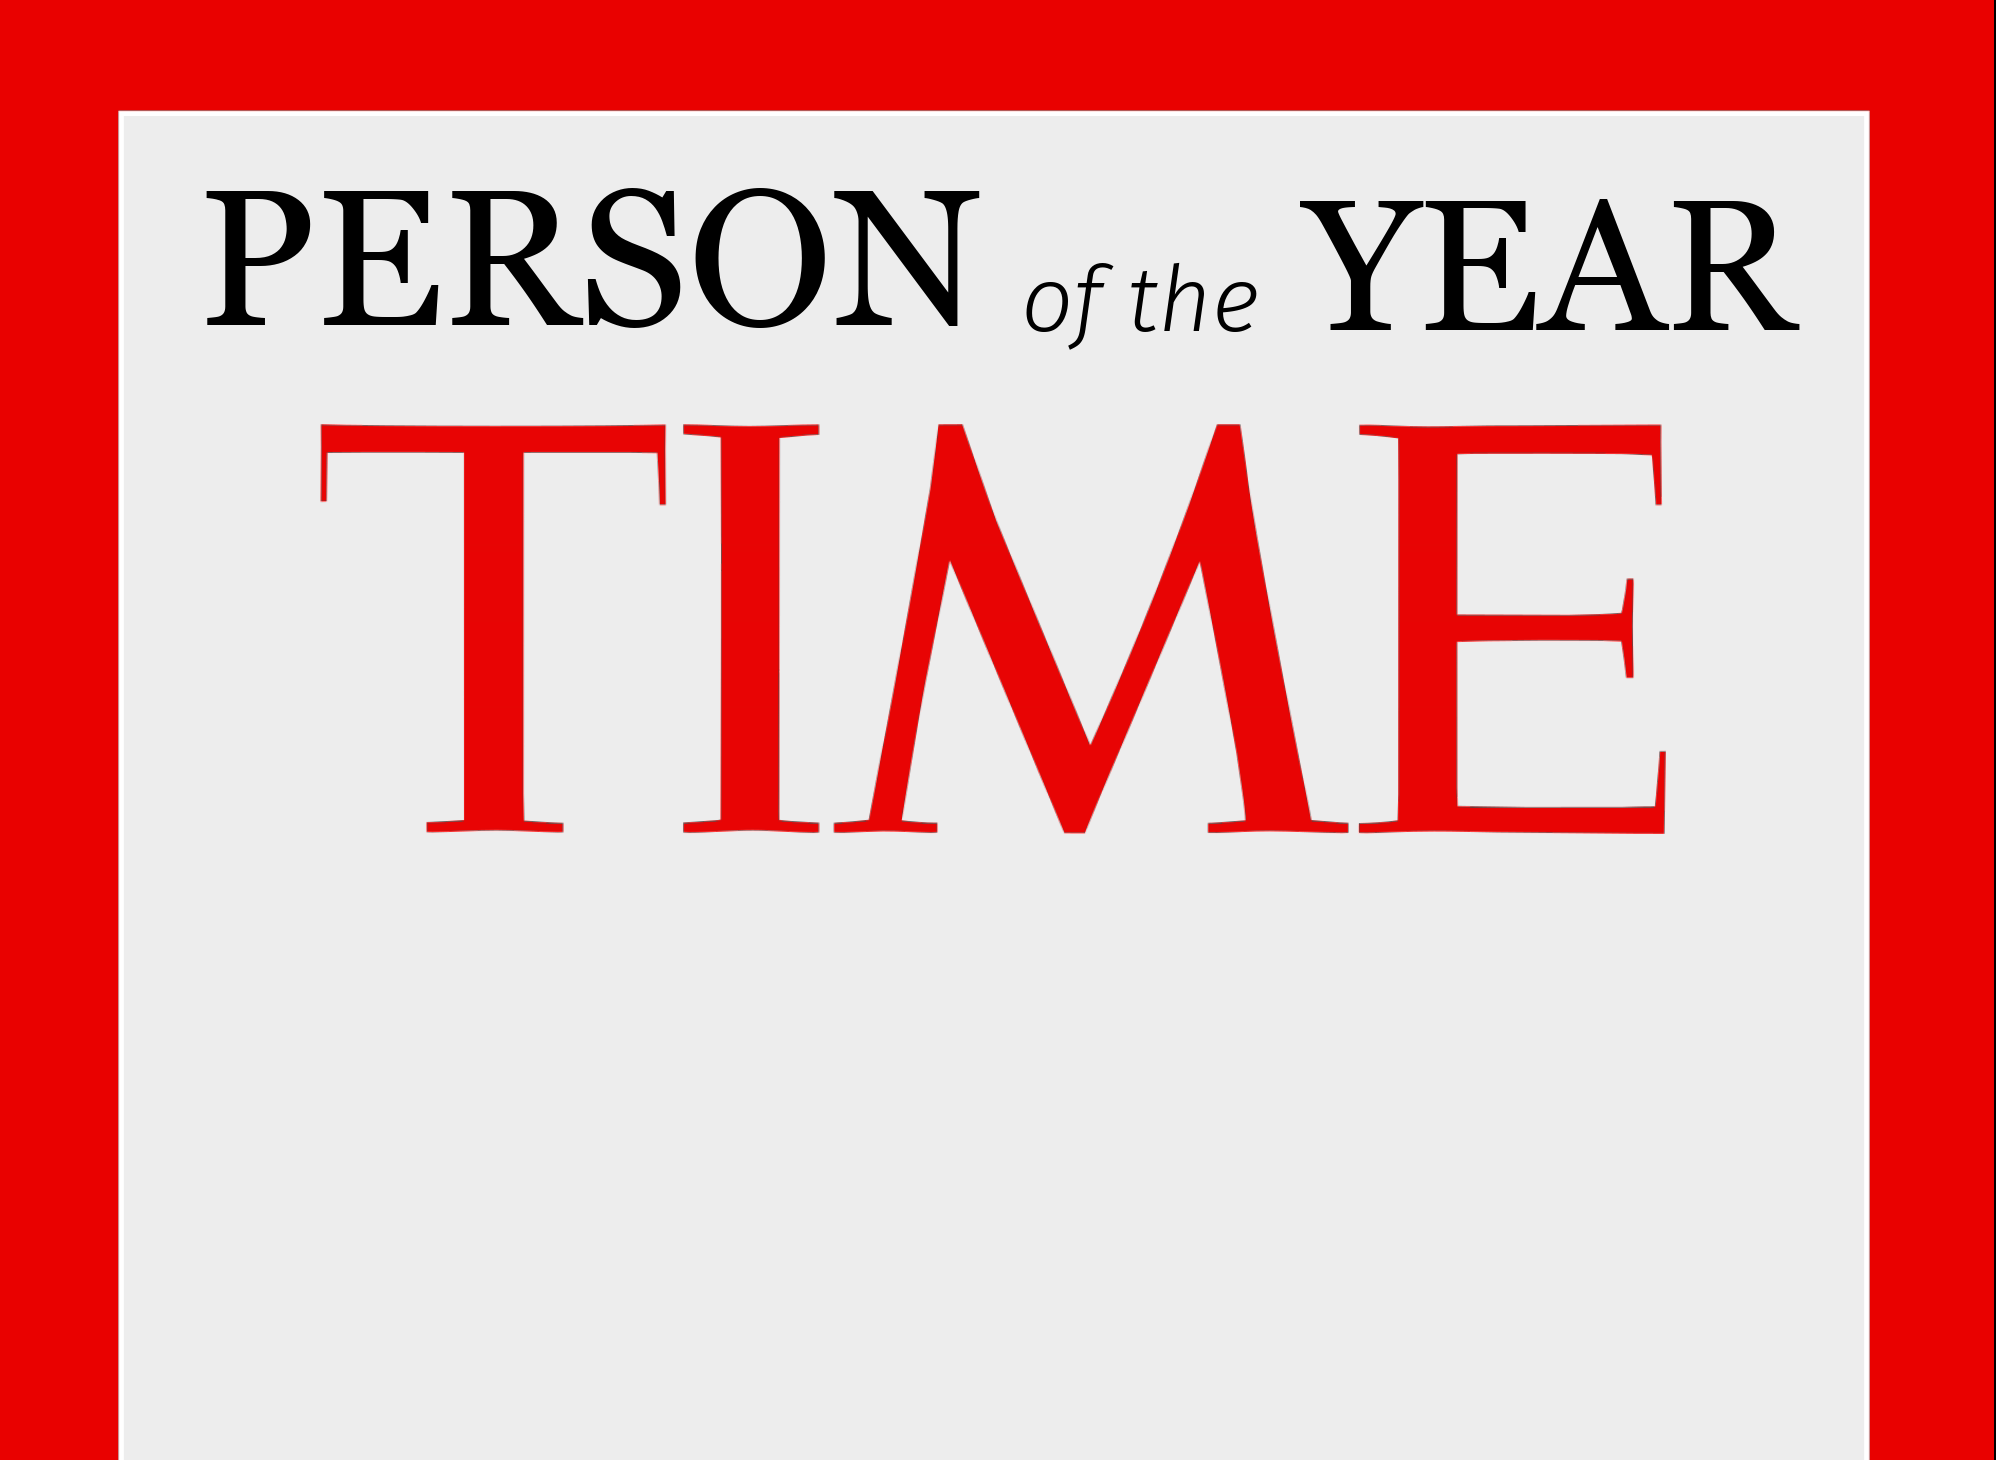 Περιοδικό TIME – Πρόσωπο της Χρονιάς 2021 ο Ίλον Μασκ